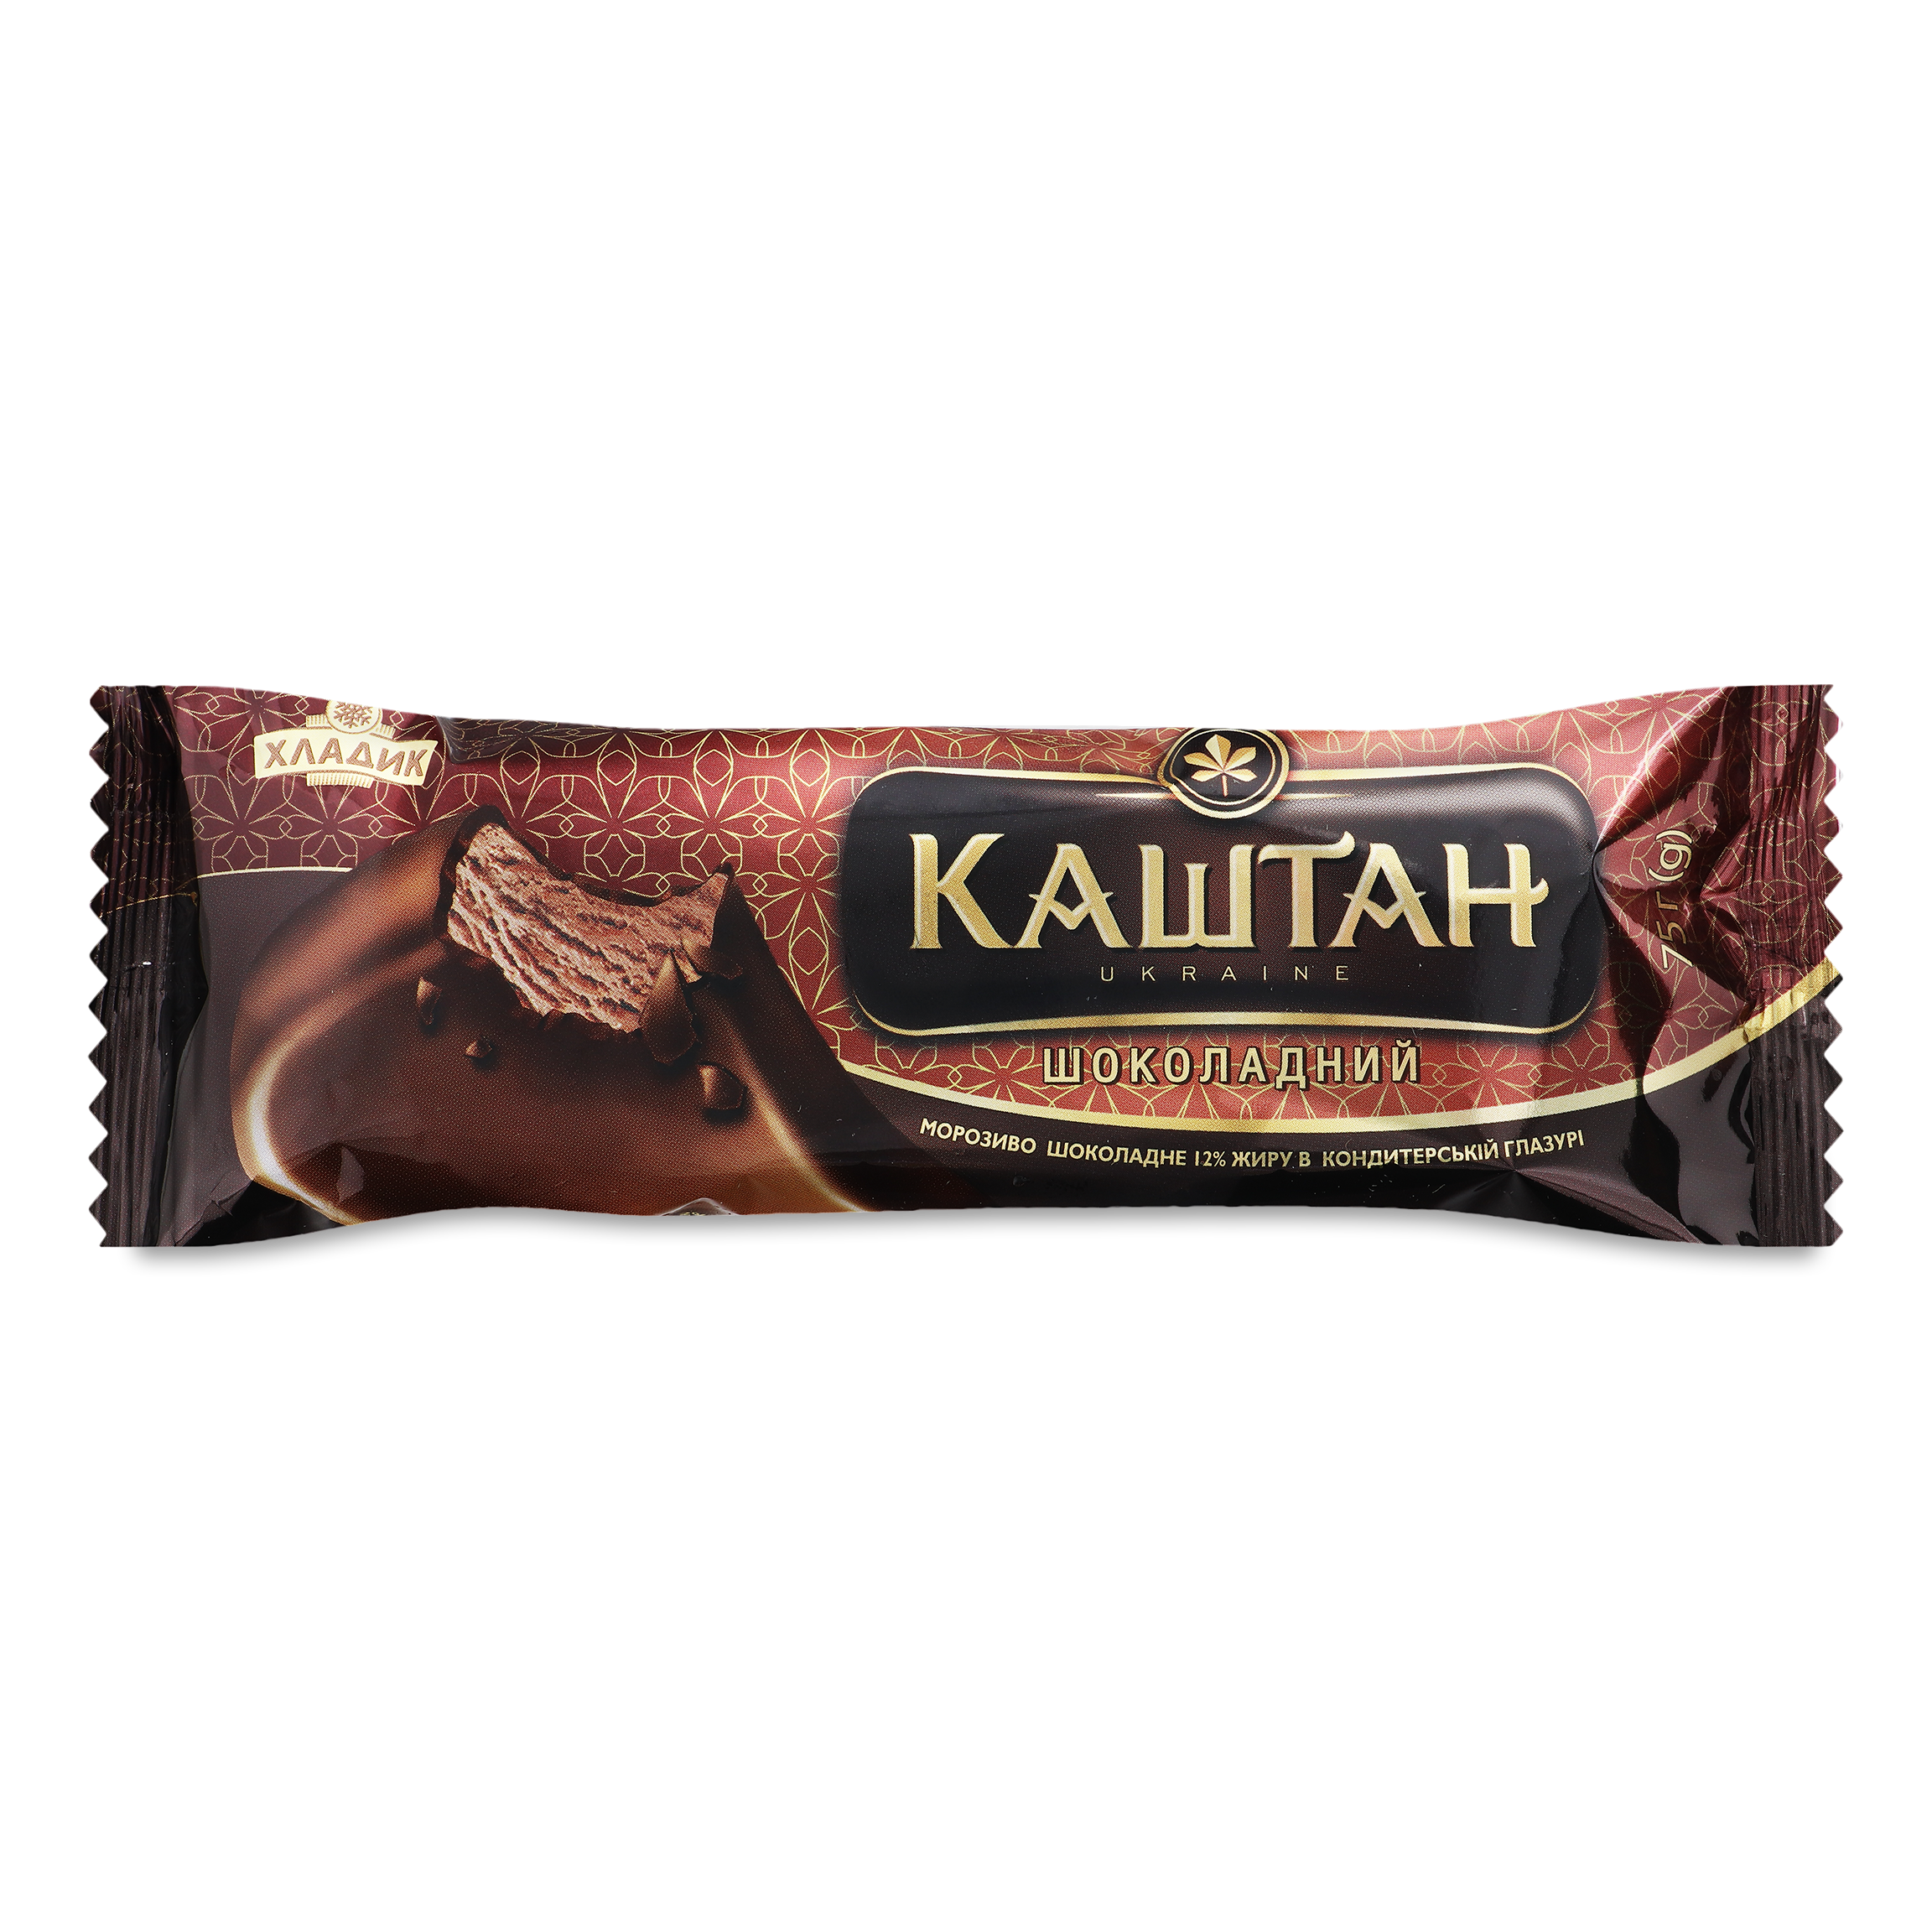 Мороженое Хладик Каштан Шоколадный пломбир шоколадный в кондитерской глазури 75г 2